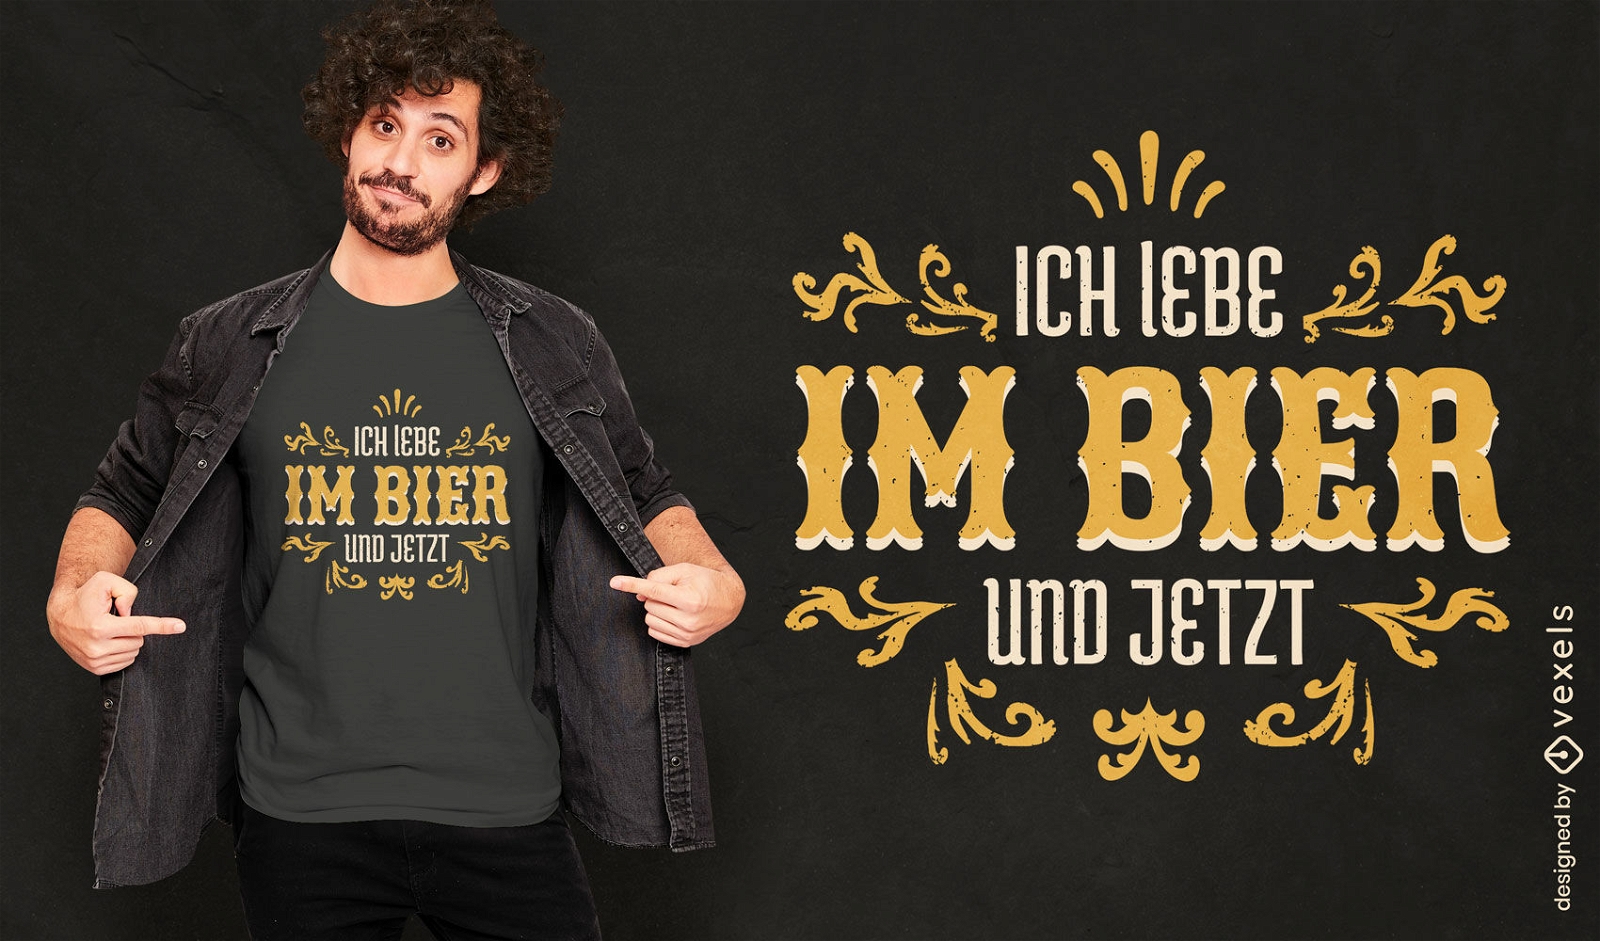 Lustiges deutsches Zitat-T-Shirt Design des Biergetr?nks